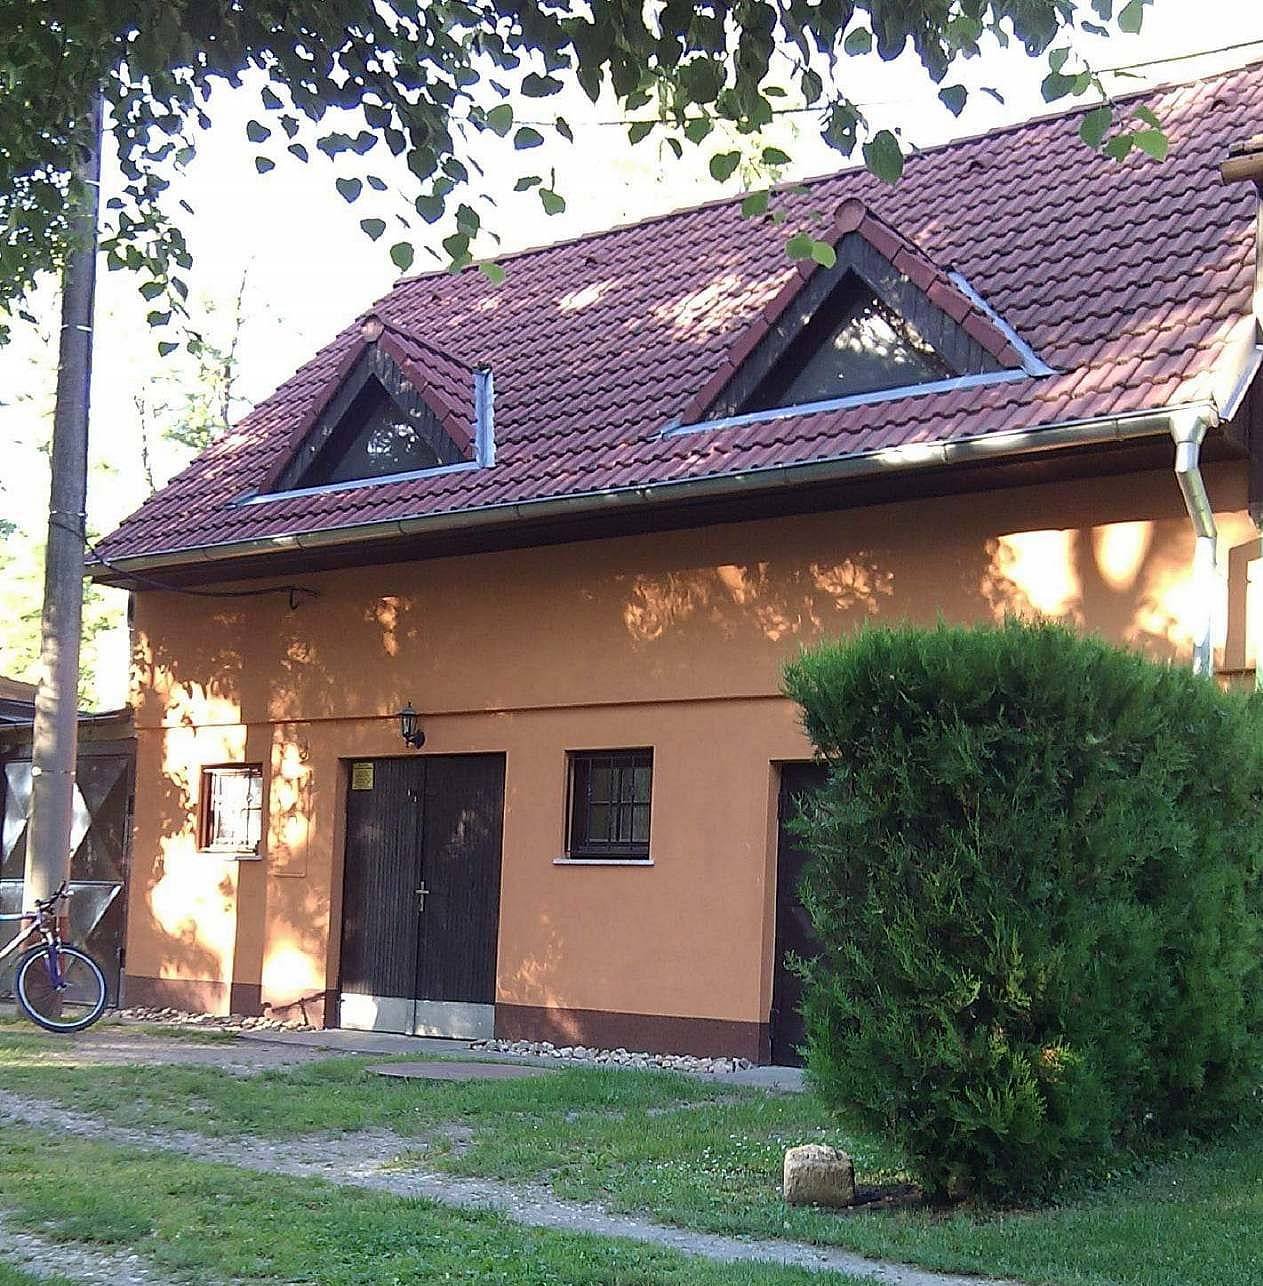 Accommodation above the Březí cellar near Mikulov